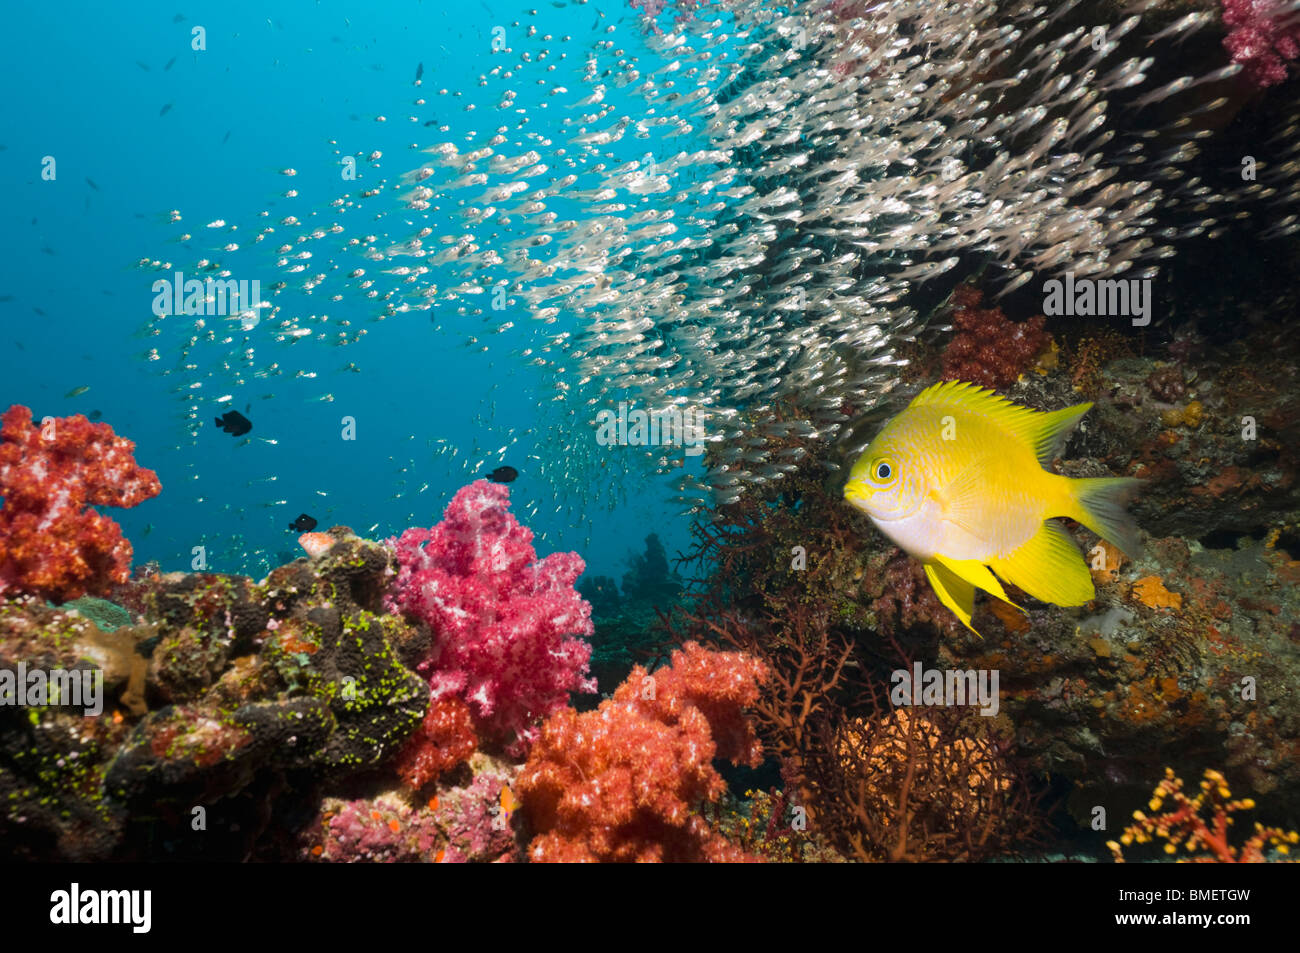 Golden fanciulla sulla barriera corallina con coralli molli e spazzatrici in background. Mare delle Andamane, Thailandia. Foto Stock